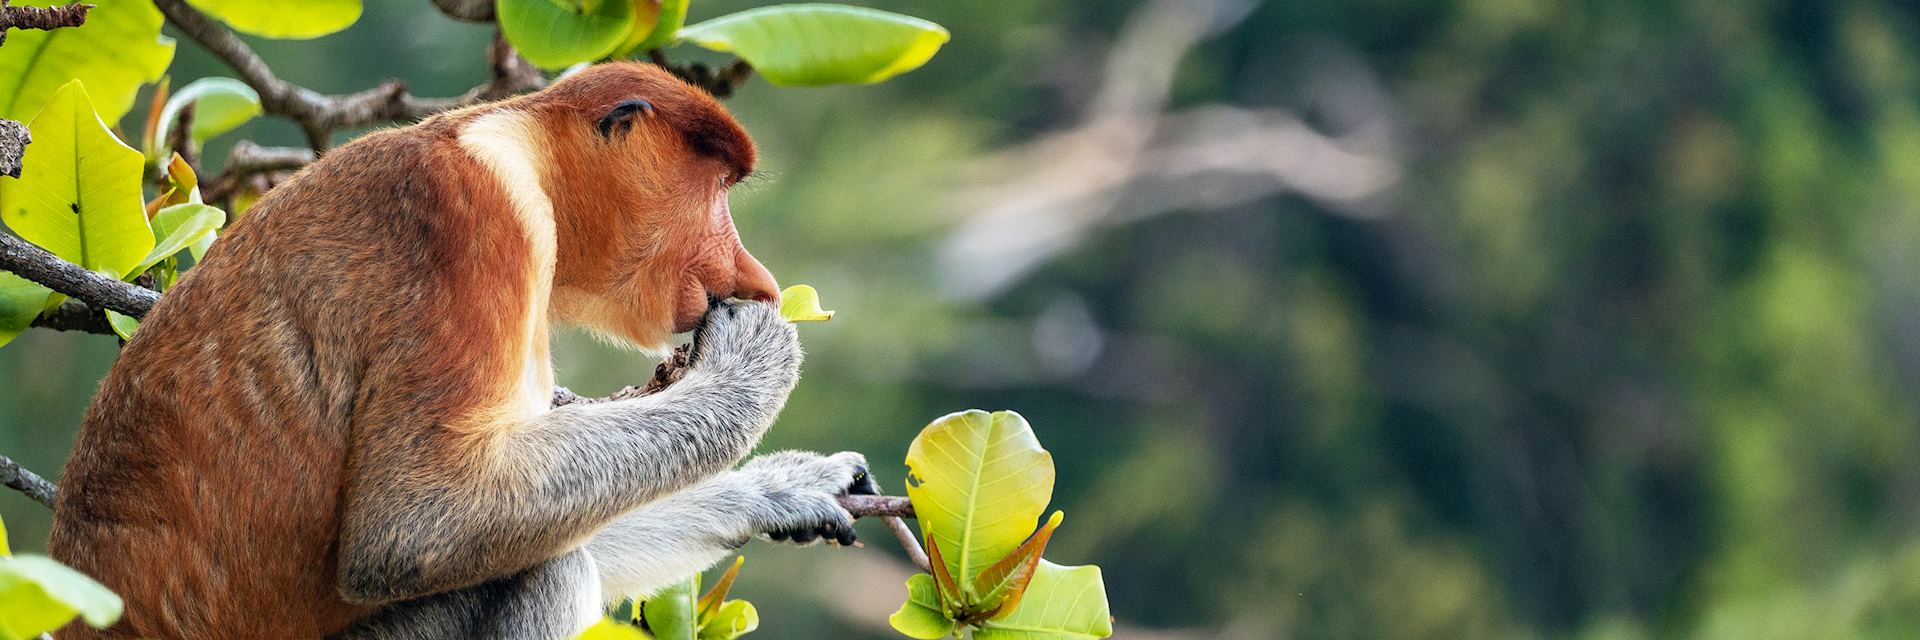 Proboscis monkey, Bako National Park